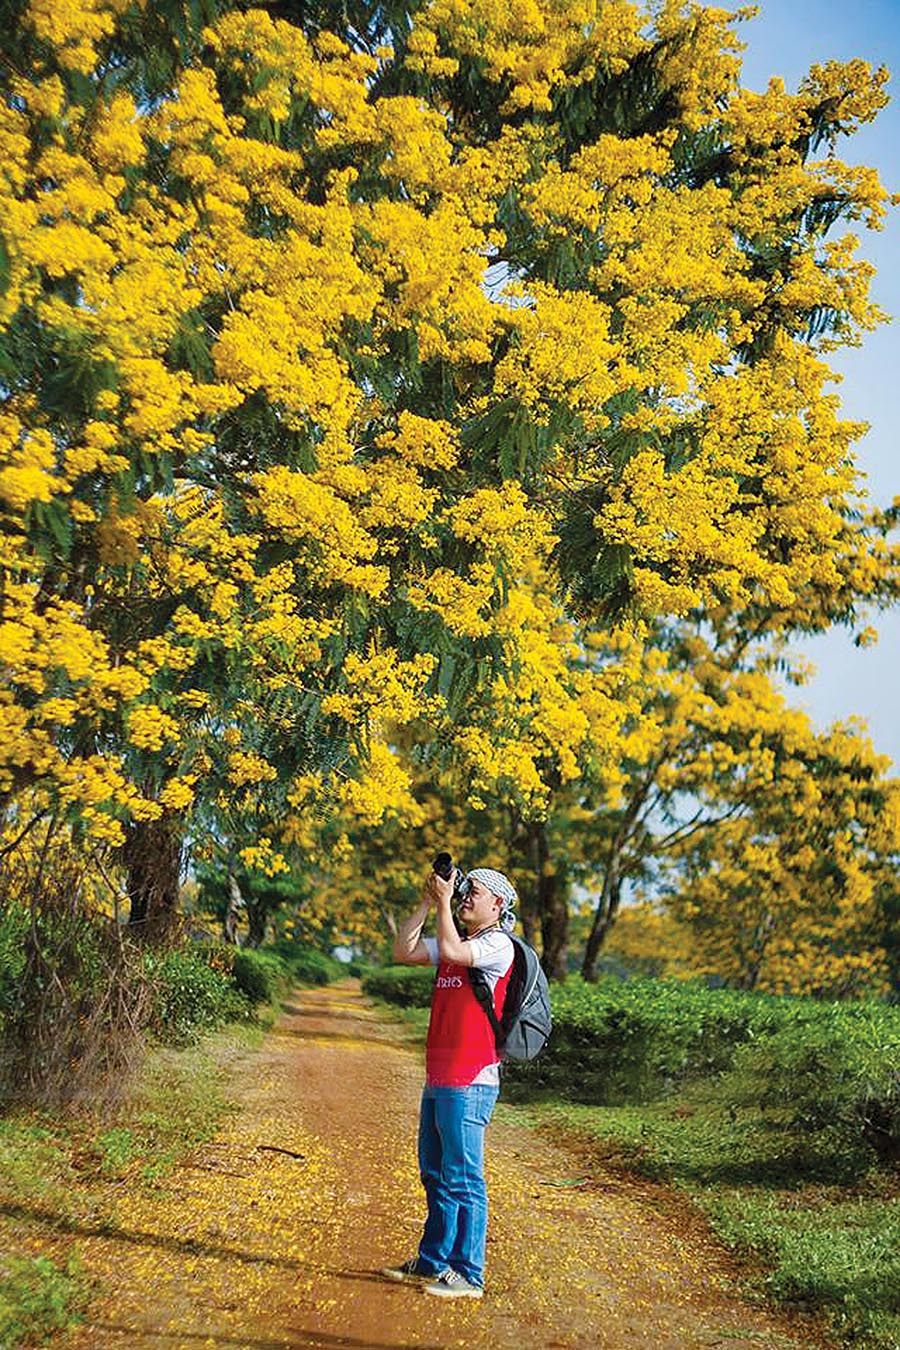  Hoa muồng vàng ở Nông trường Chè Bàu Cạn (huyện Chư Prông). Ảnh: Công Ngô